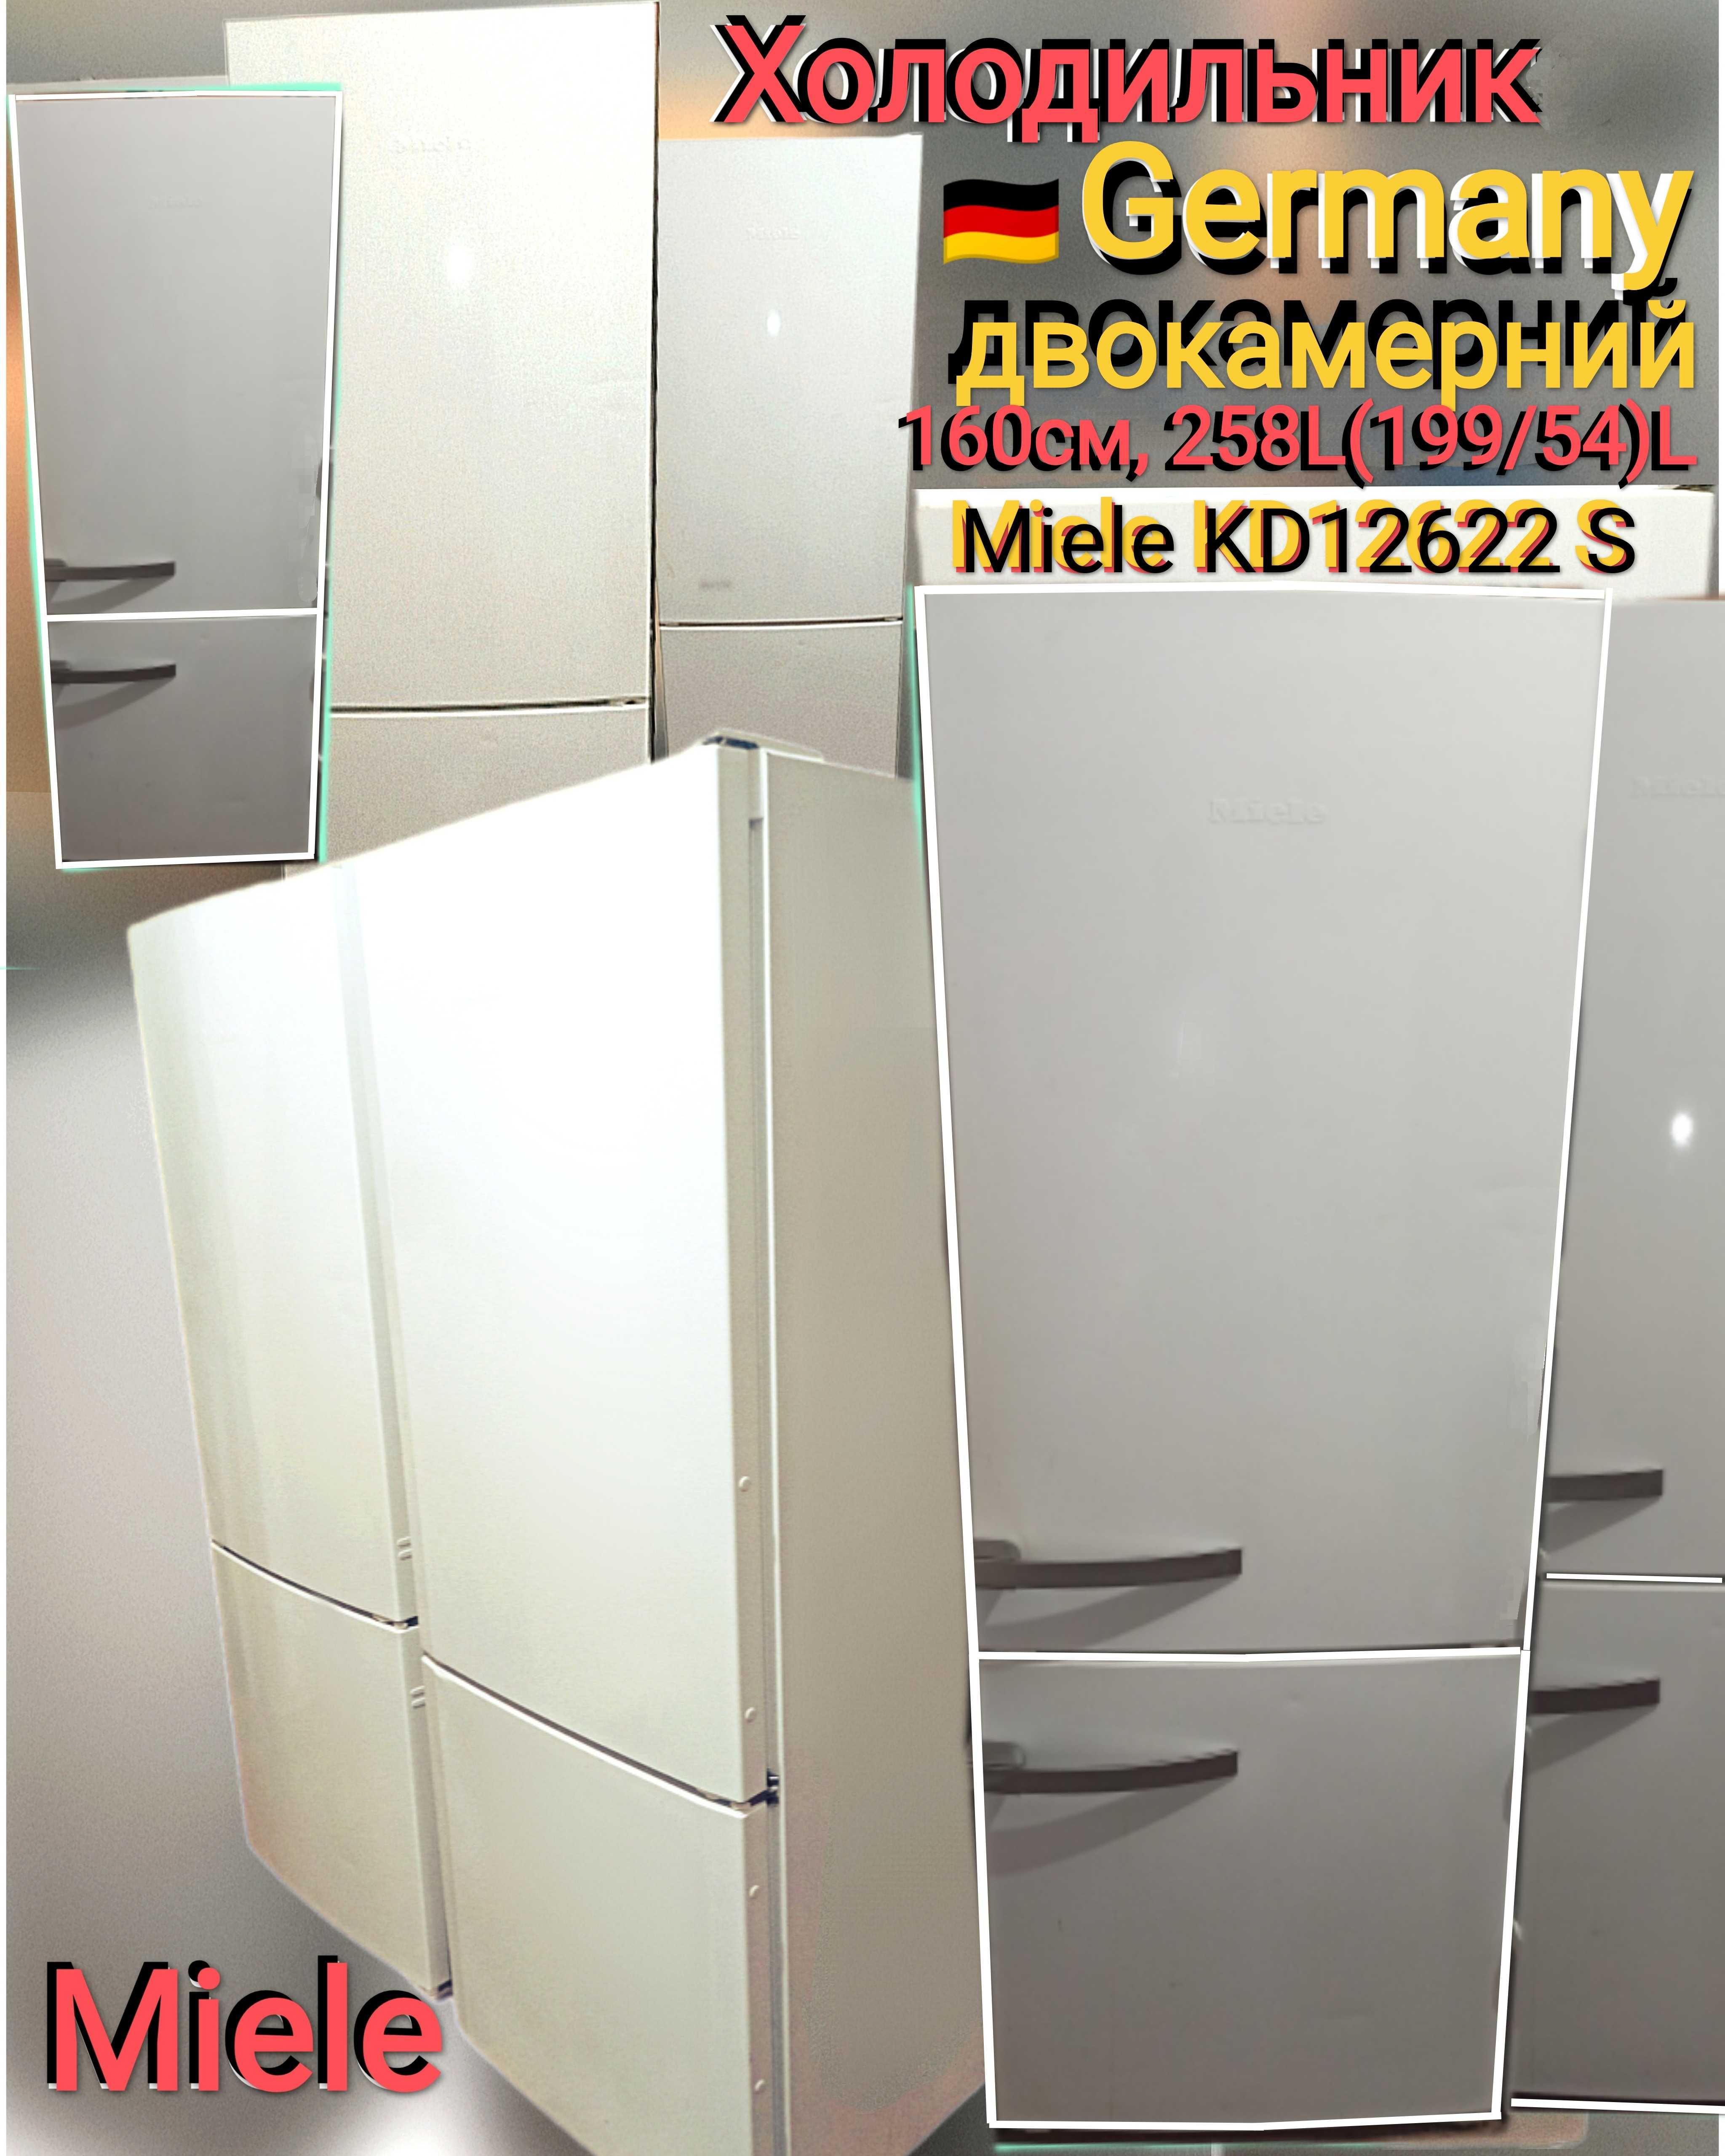 Холодильник Miele,німецька якість, двокамерний,білий,160см,258L